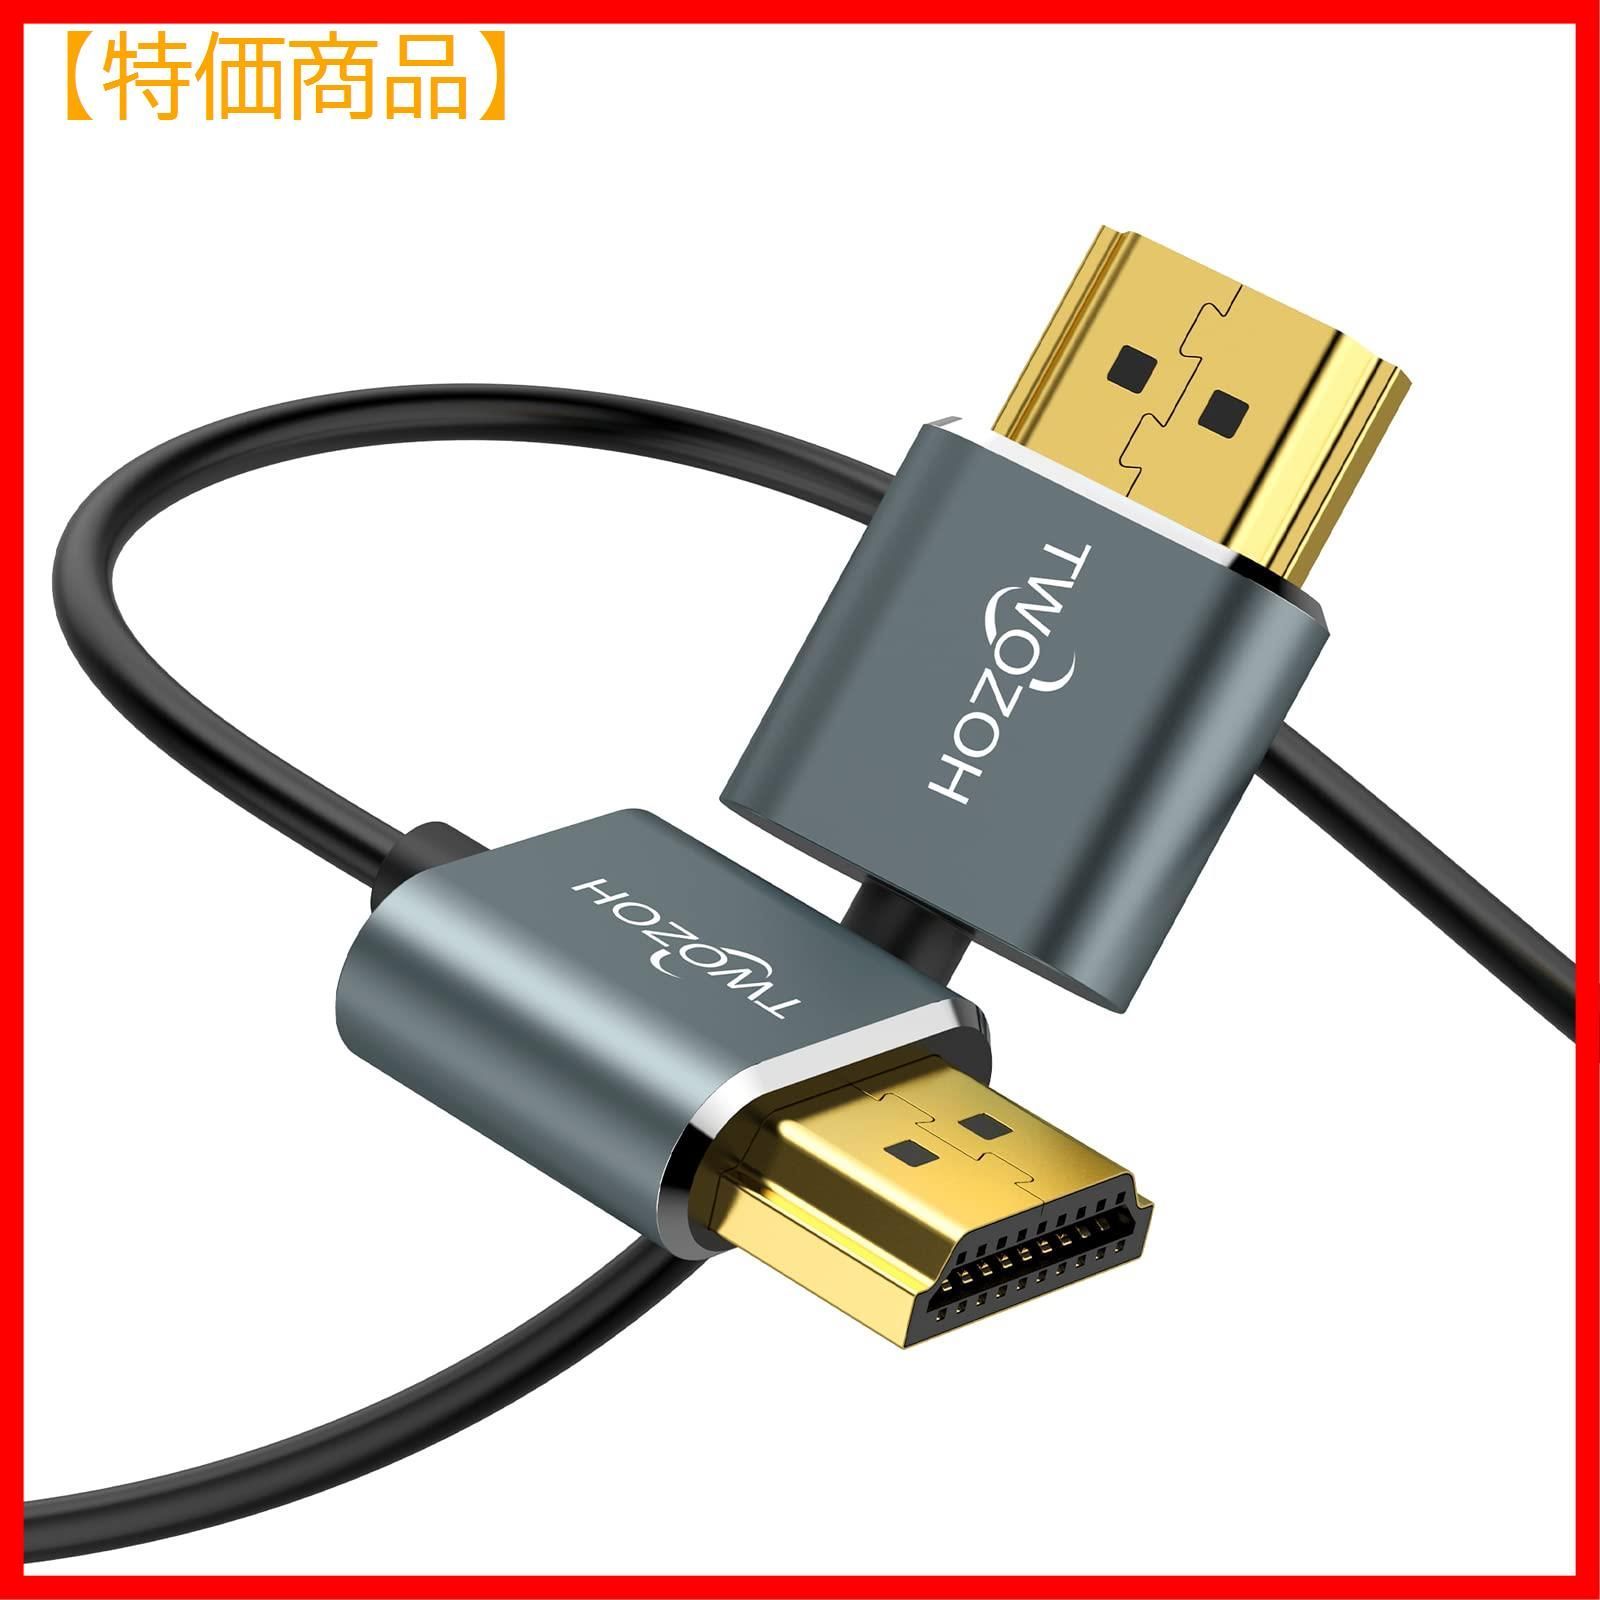 Duronic IR320G USB 3.0 ギガビット イーサネット LAN ネットワークアダプター 5Gbps